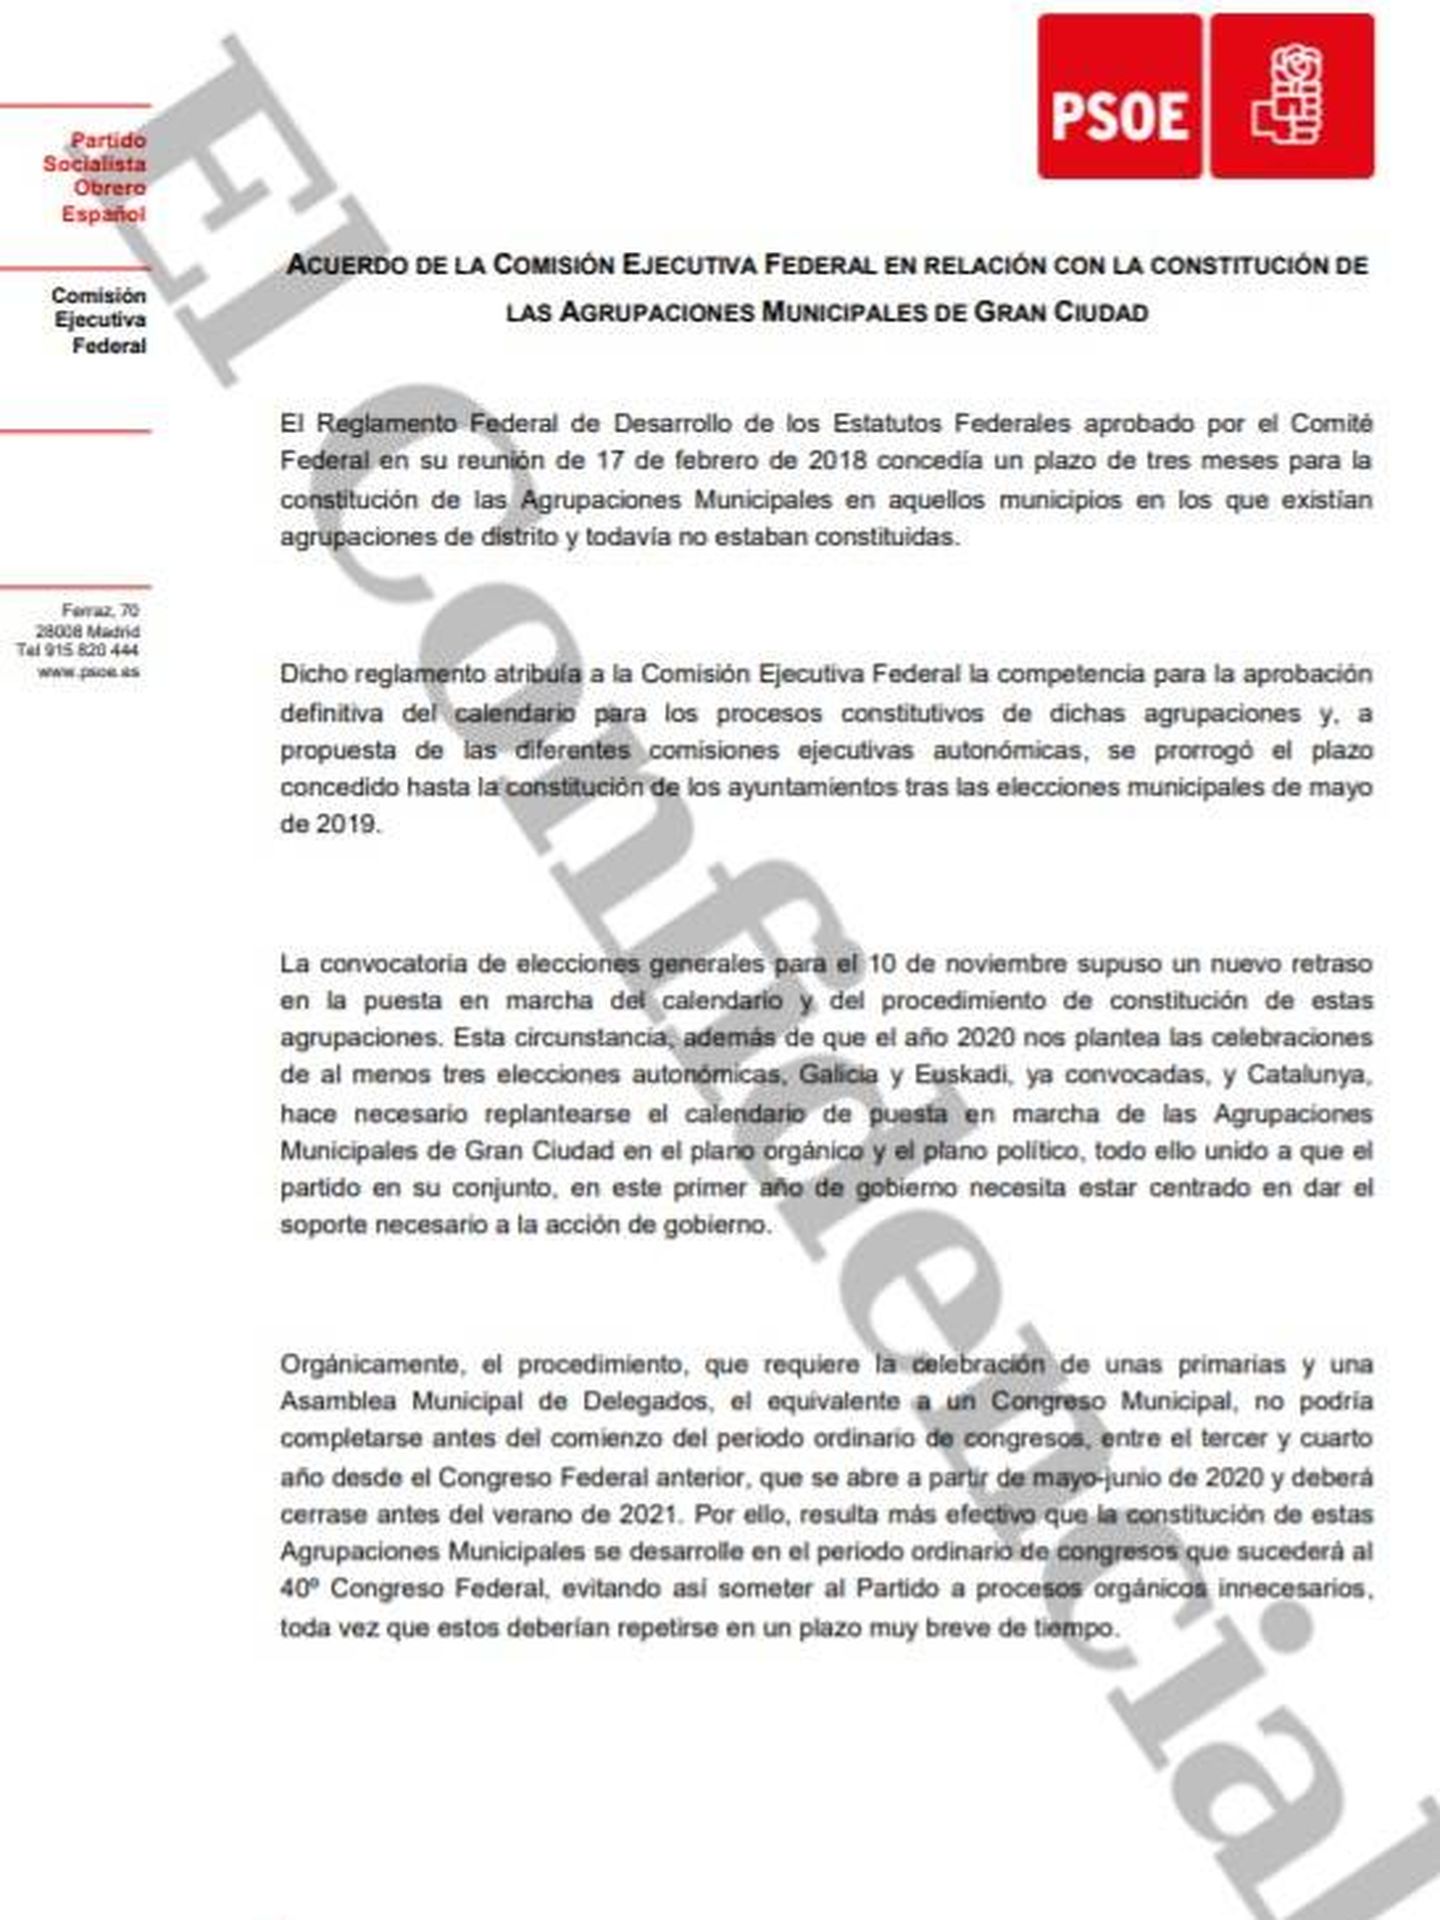 Consulte aquí en PDF el acuerdo de Ferraz de suspensión de la constitución de las agrupaciones de gran ciudad del PSOE. 